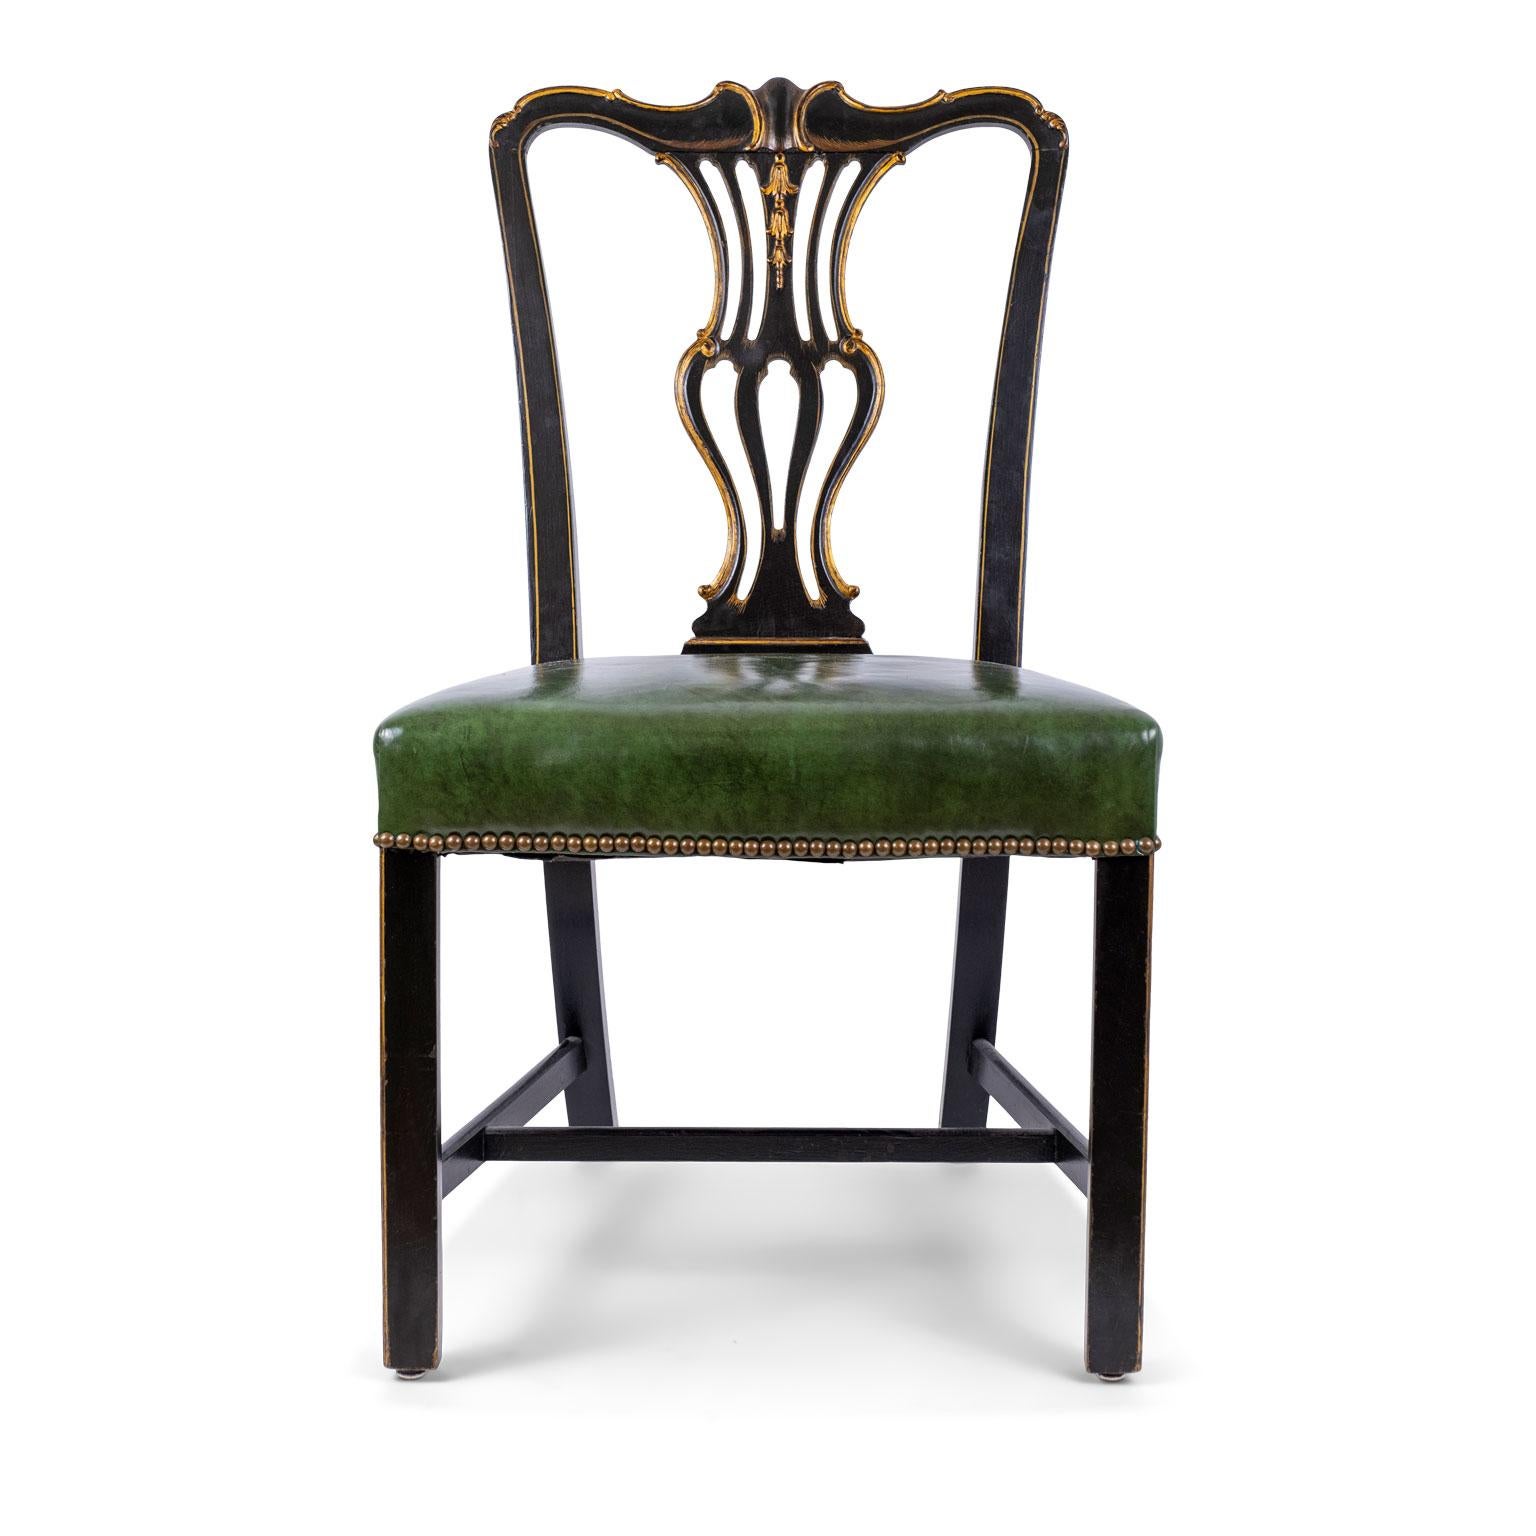 Chaise d'appoint portugaise ébonisée et dorée, sculptée dans les années 1980. Recouvert de cuir teinté vert et décoré d'une garniture en tête de clou.

Note : La finition originale/précoce du métal antique et vintage comprend une partie ou la